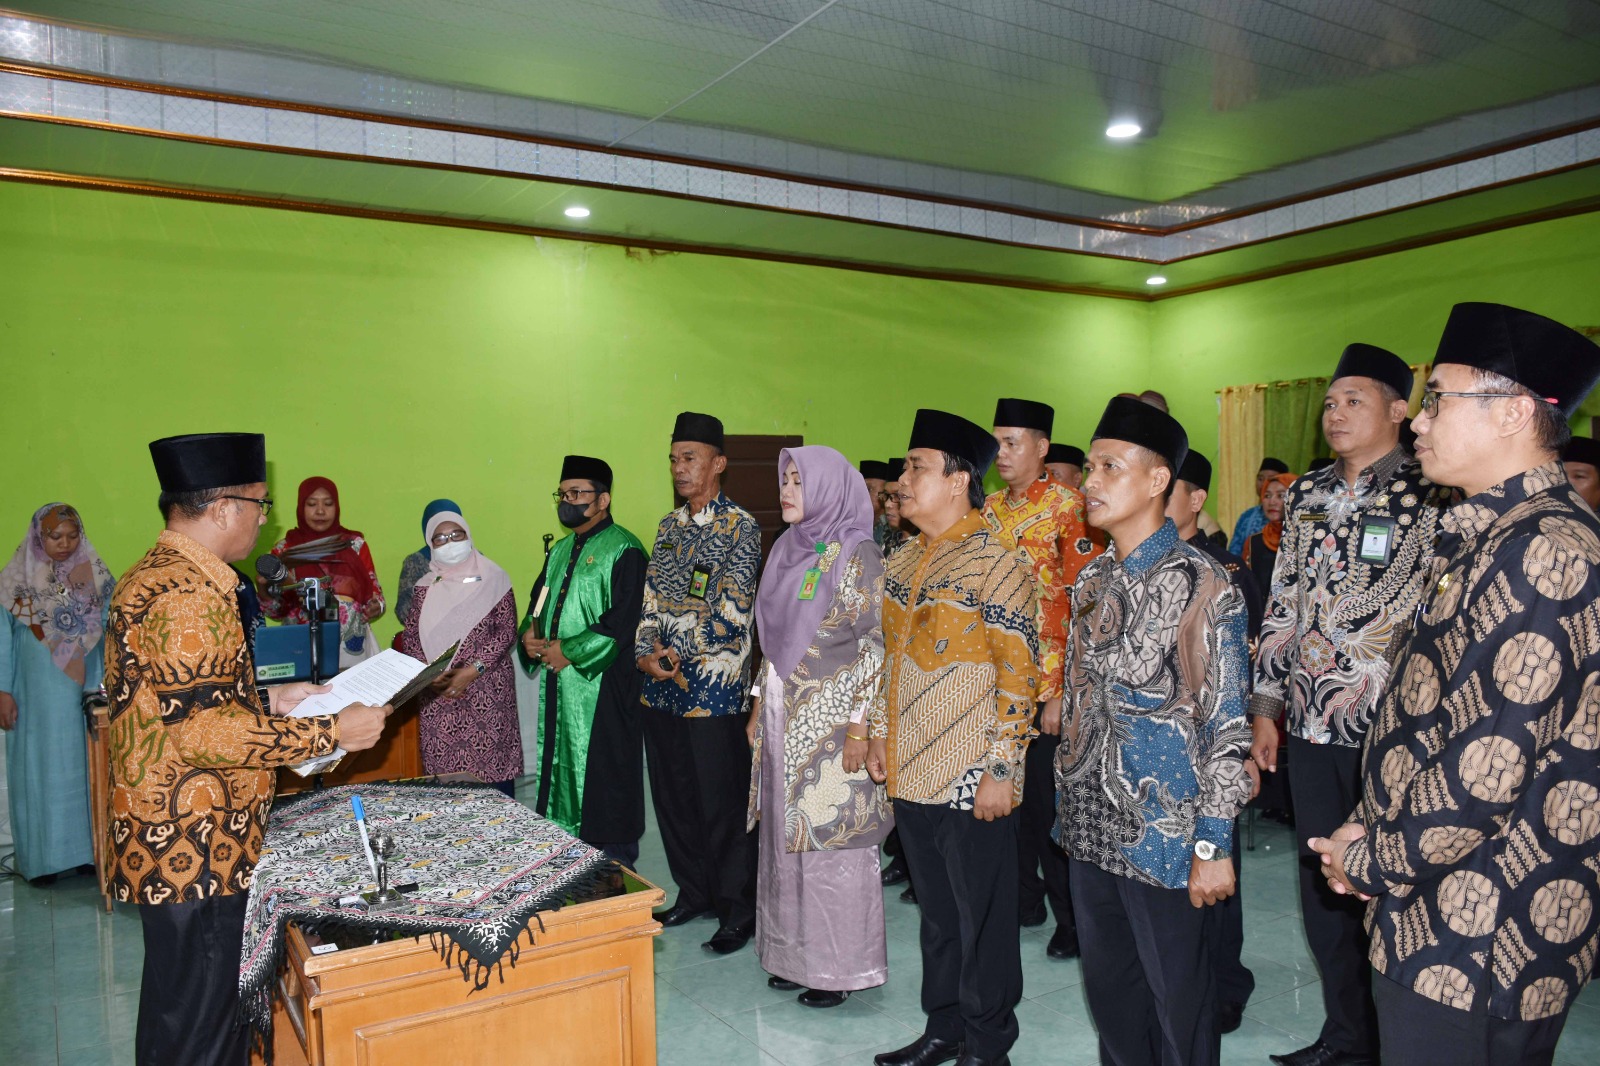  Kakan Kemenag Kota Bengkulu Lantik 8 Pejabat, 4 Diantaranya Kepala Madrasah